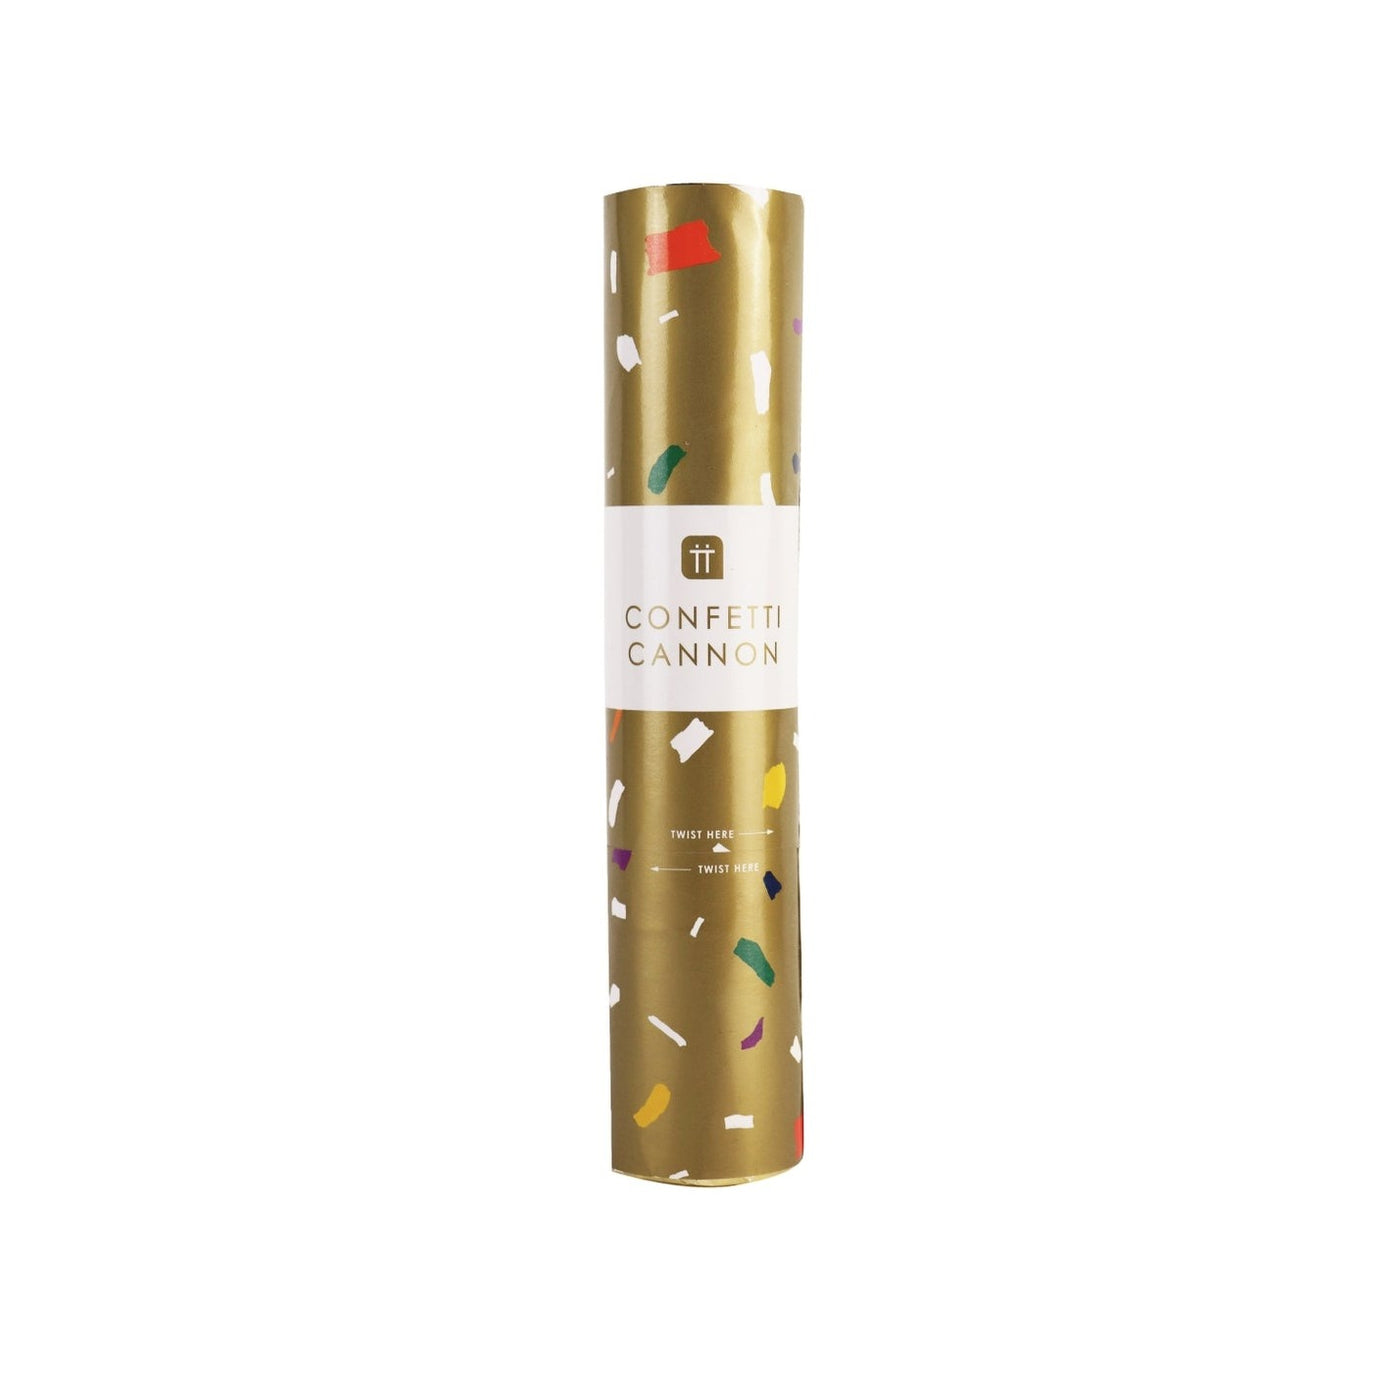 Luxe Gold Confetti Cannon